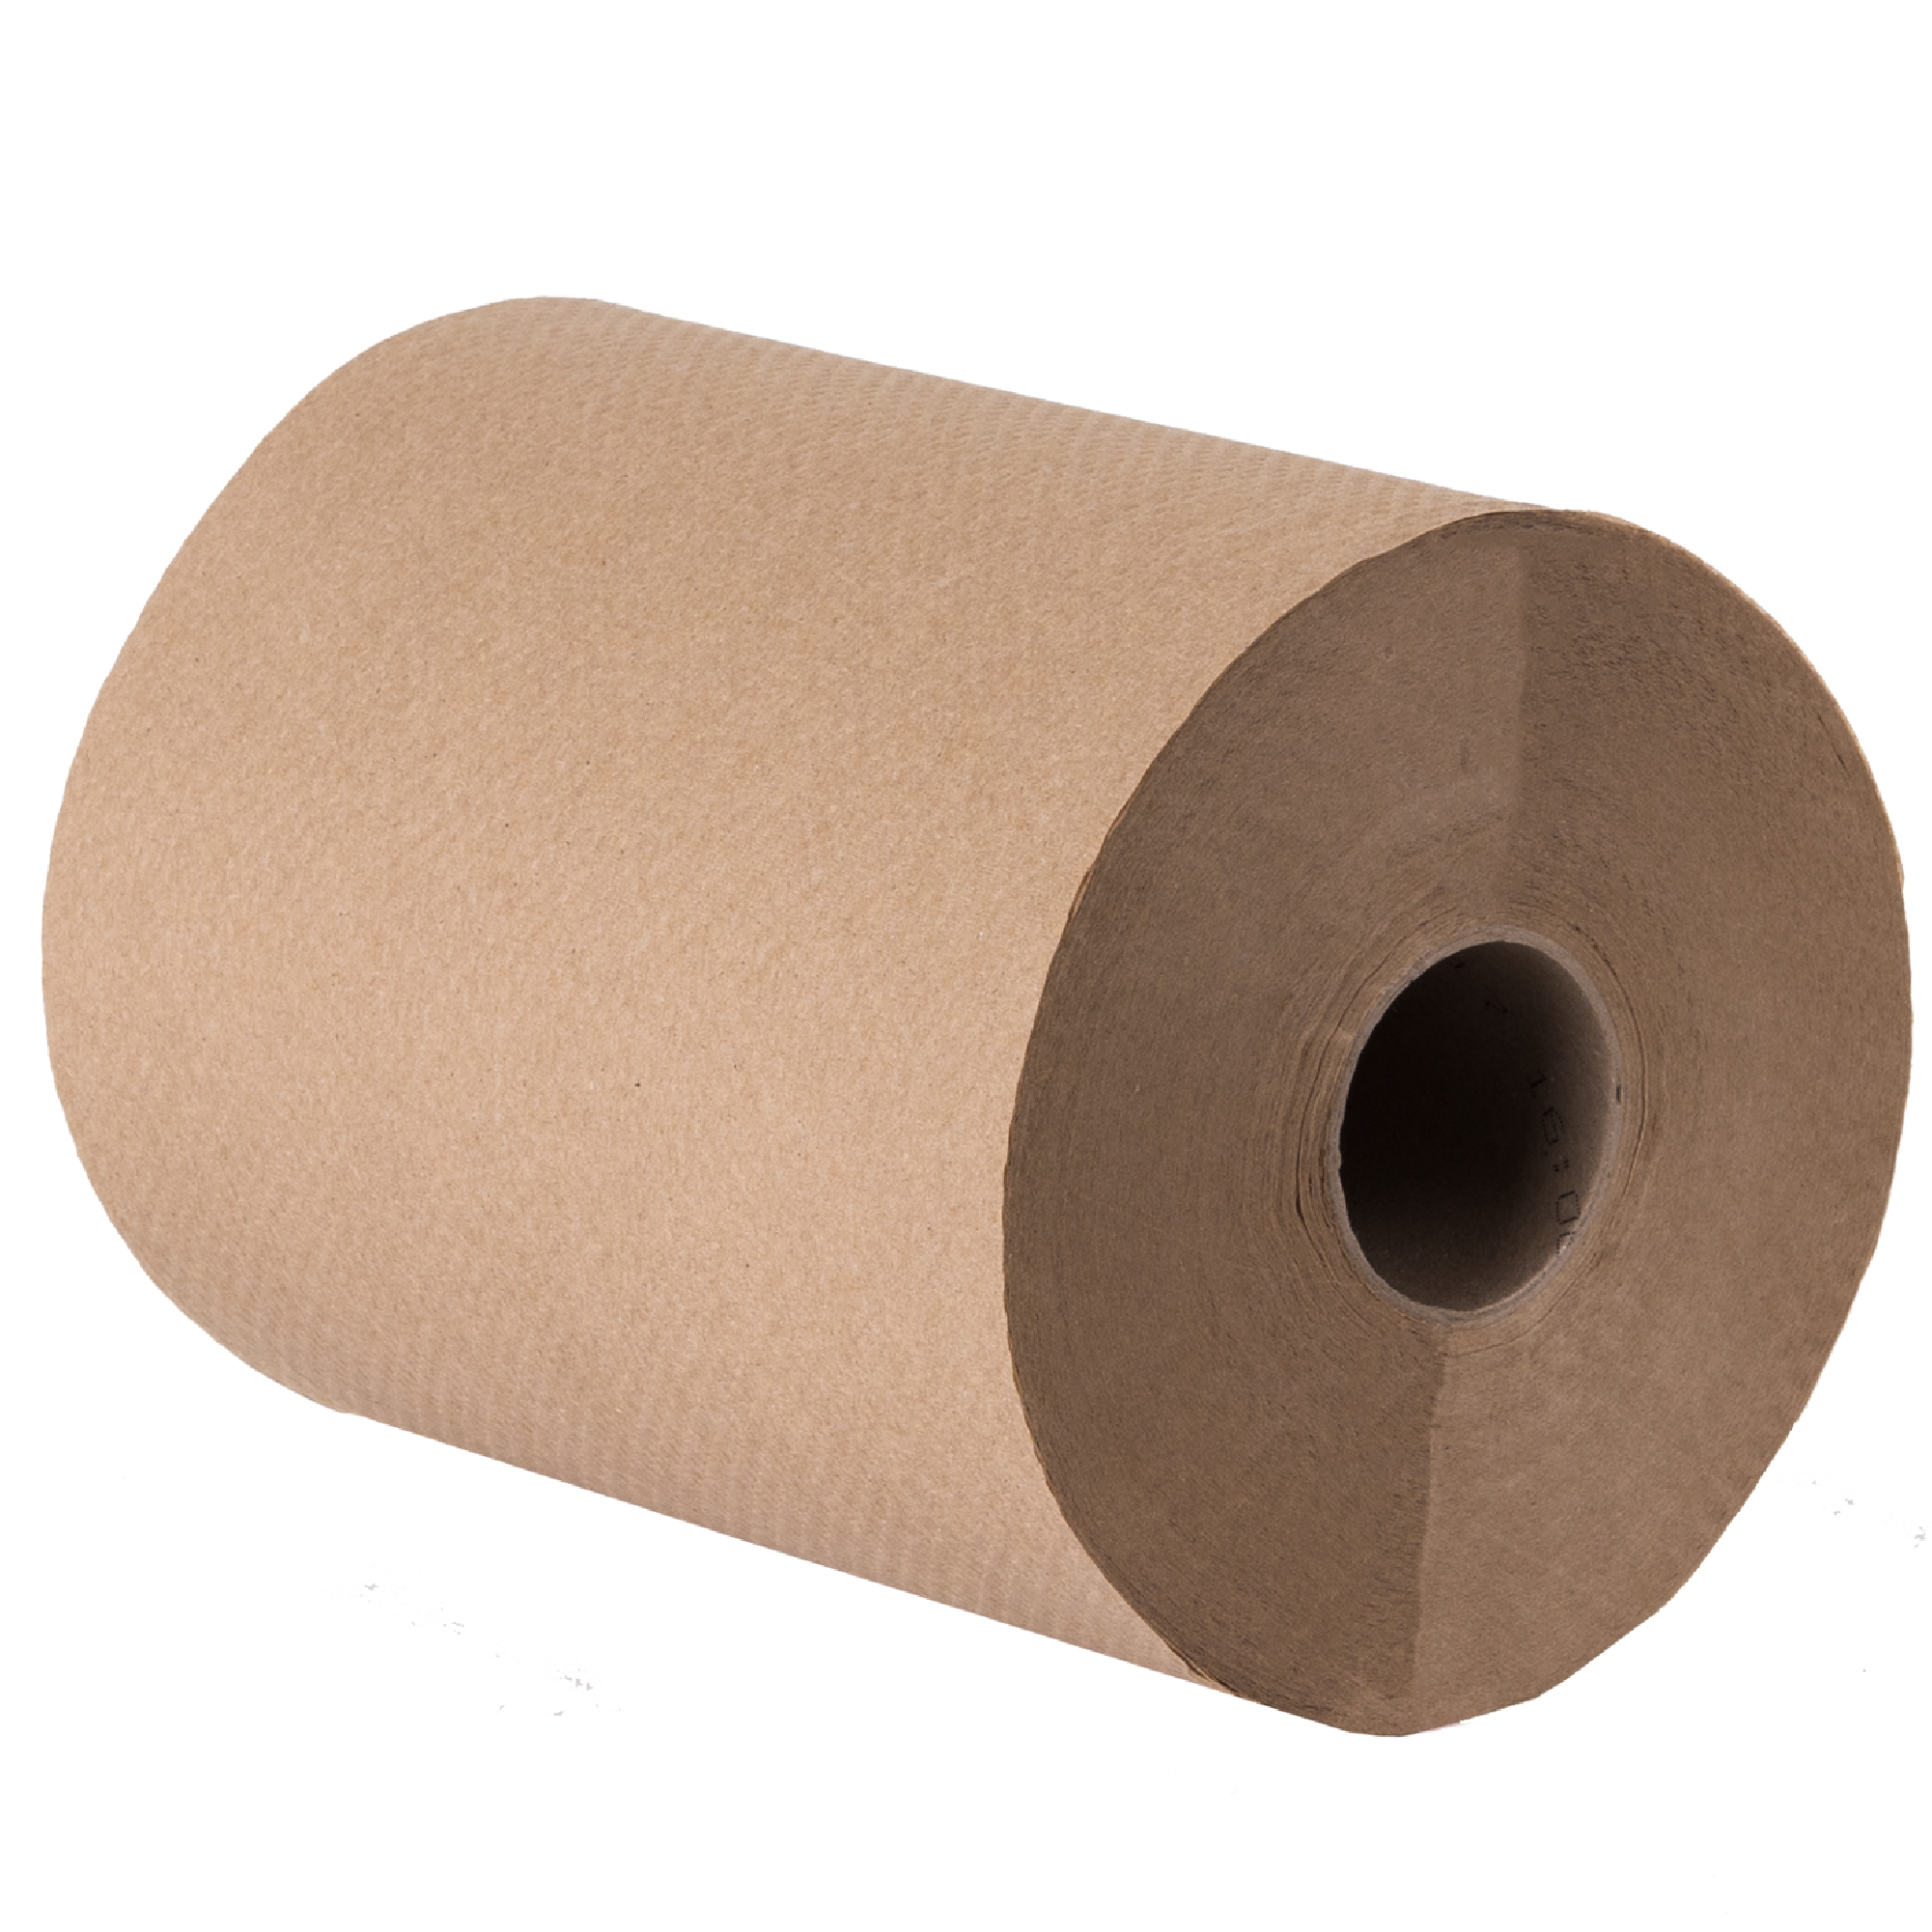 Tork 700161 toalla en rollo universal Kraft hoja sencilla color marrón, caja con 6 rollos de 180 metros cada uno